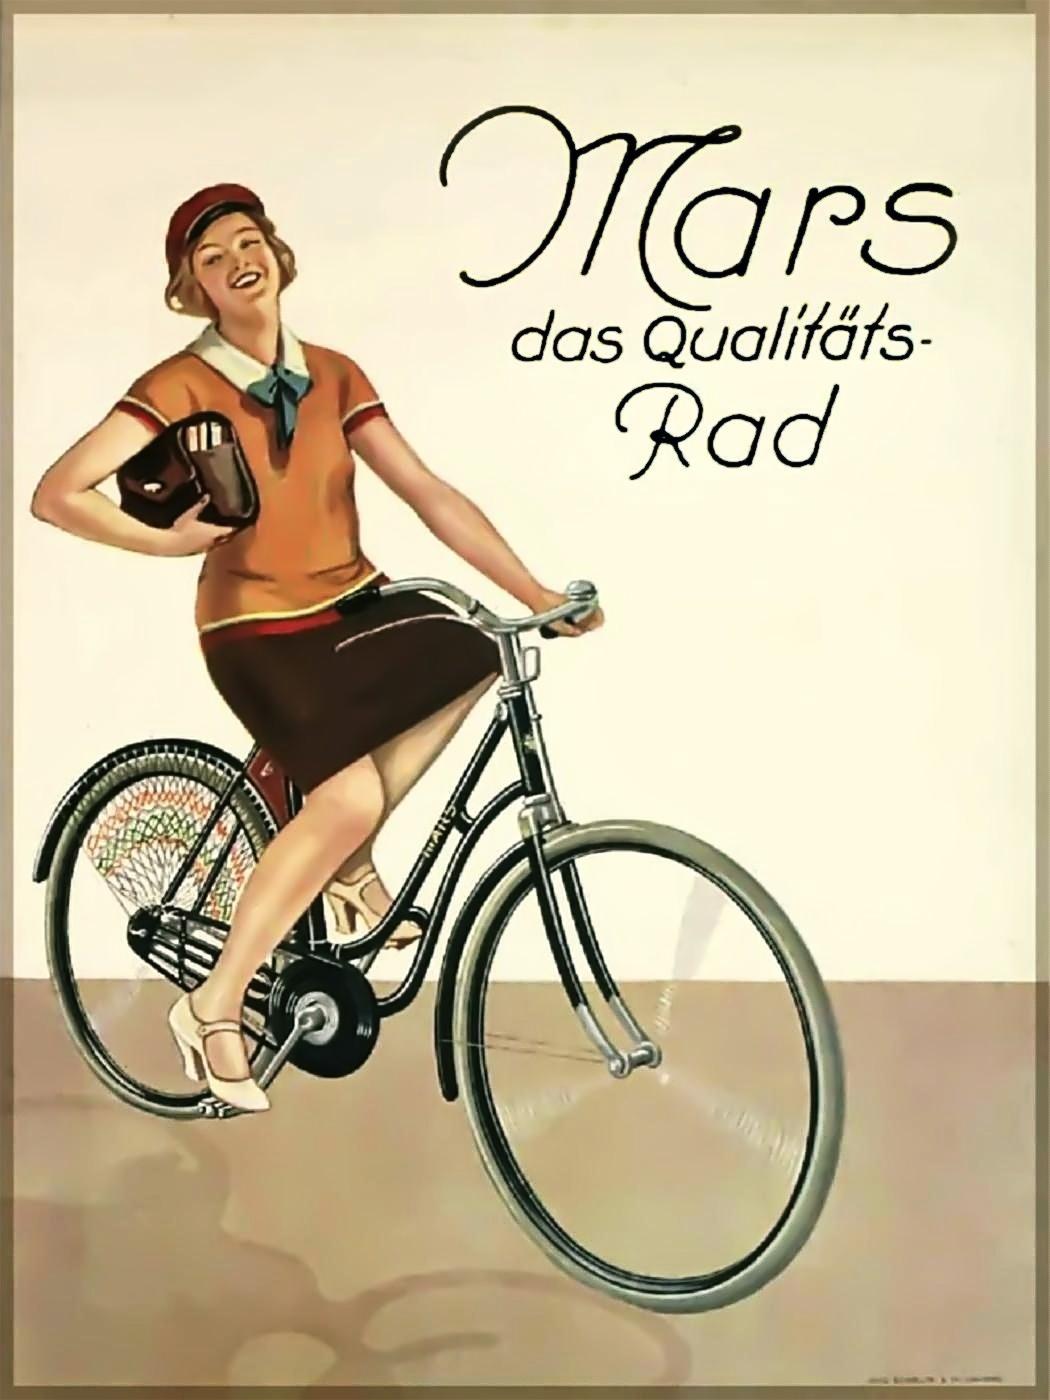 Mars Qualitätsrad